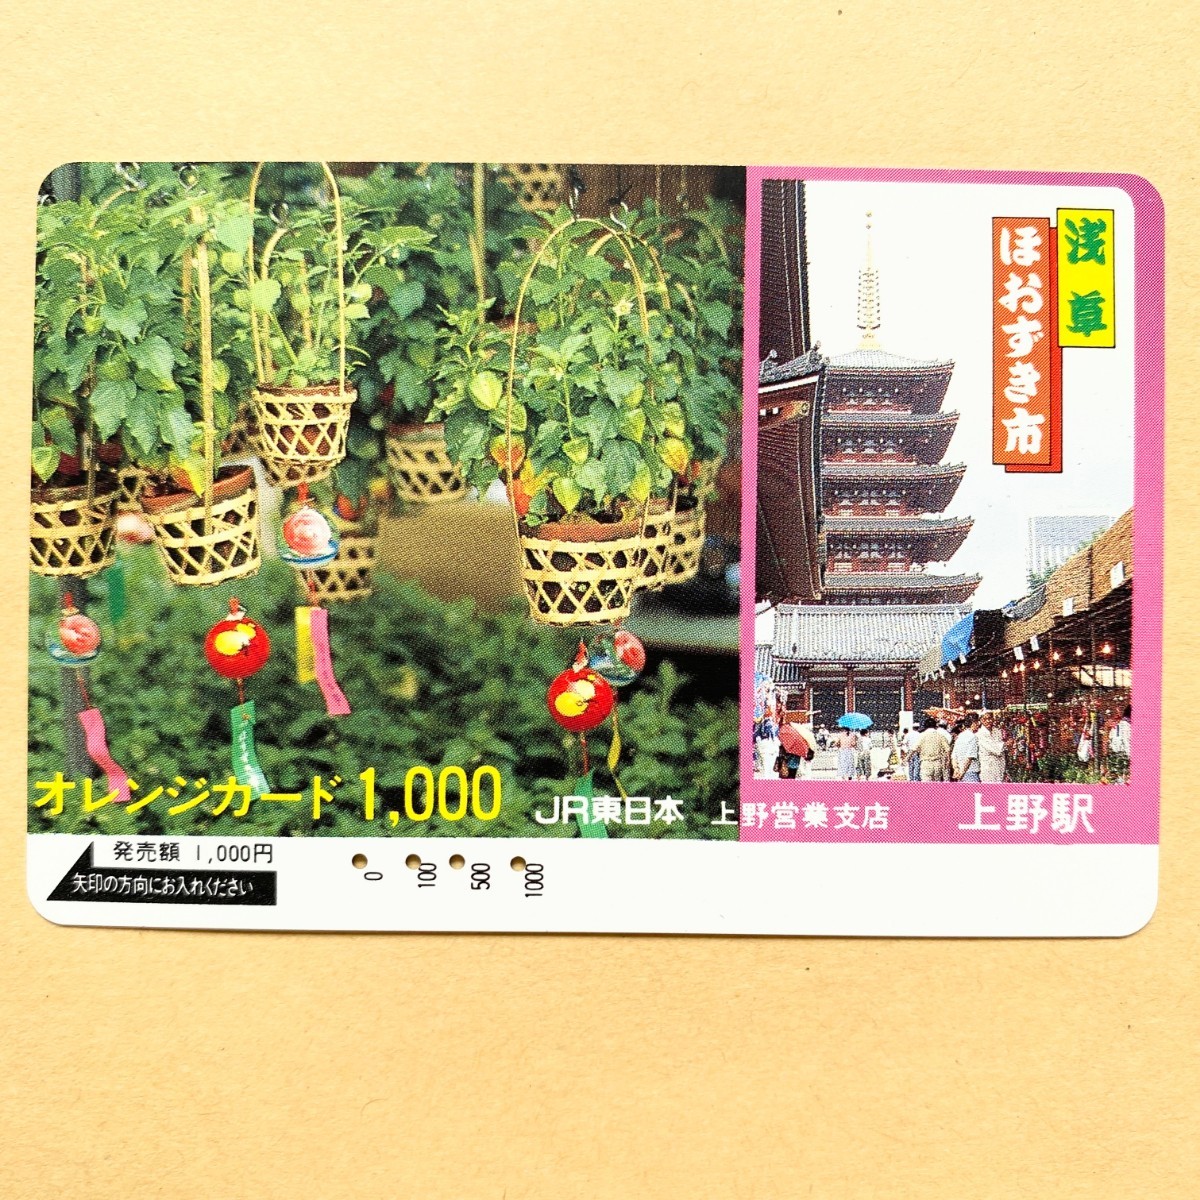 【使用済】 オレンジカード JR東日本 浅草 ほおずき市_画像1